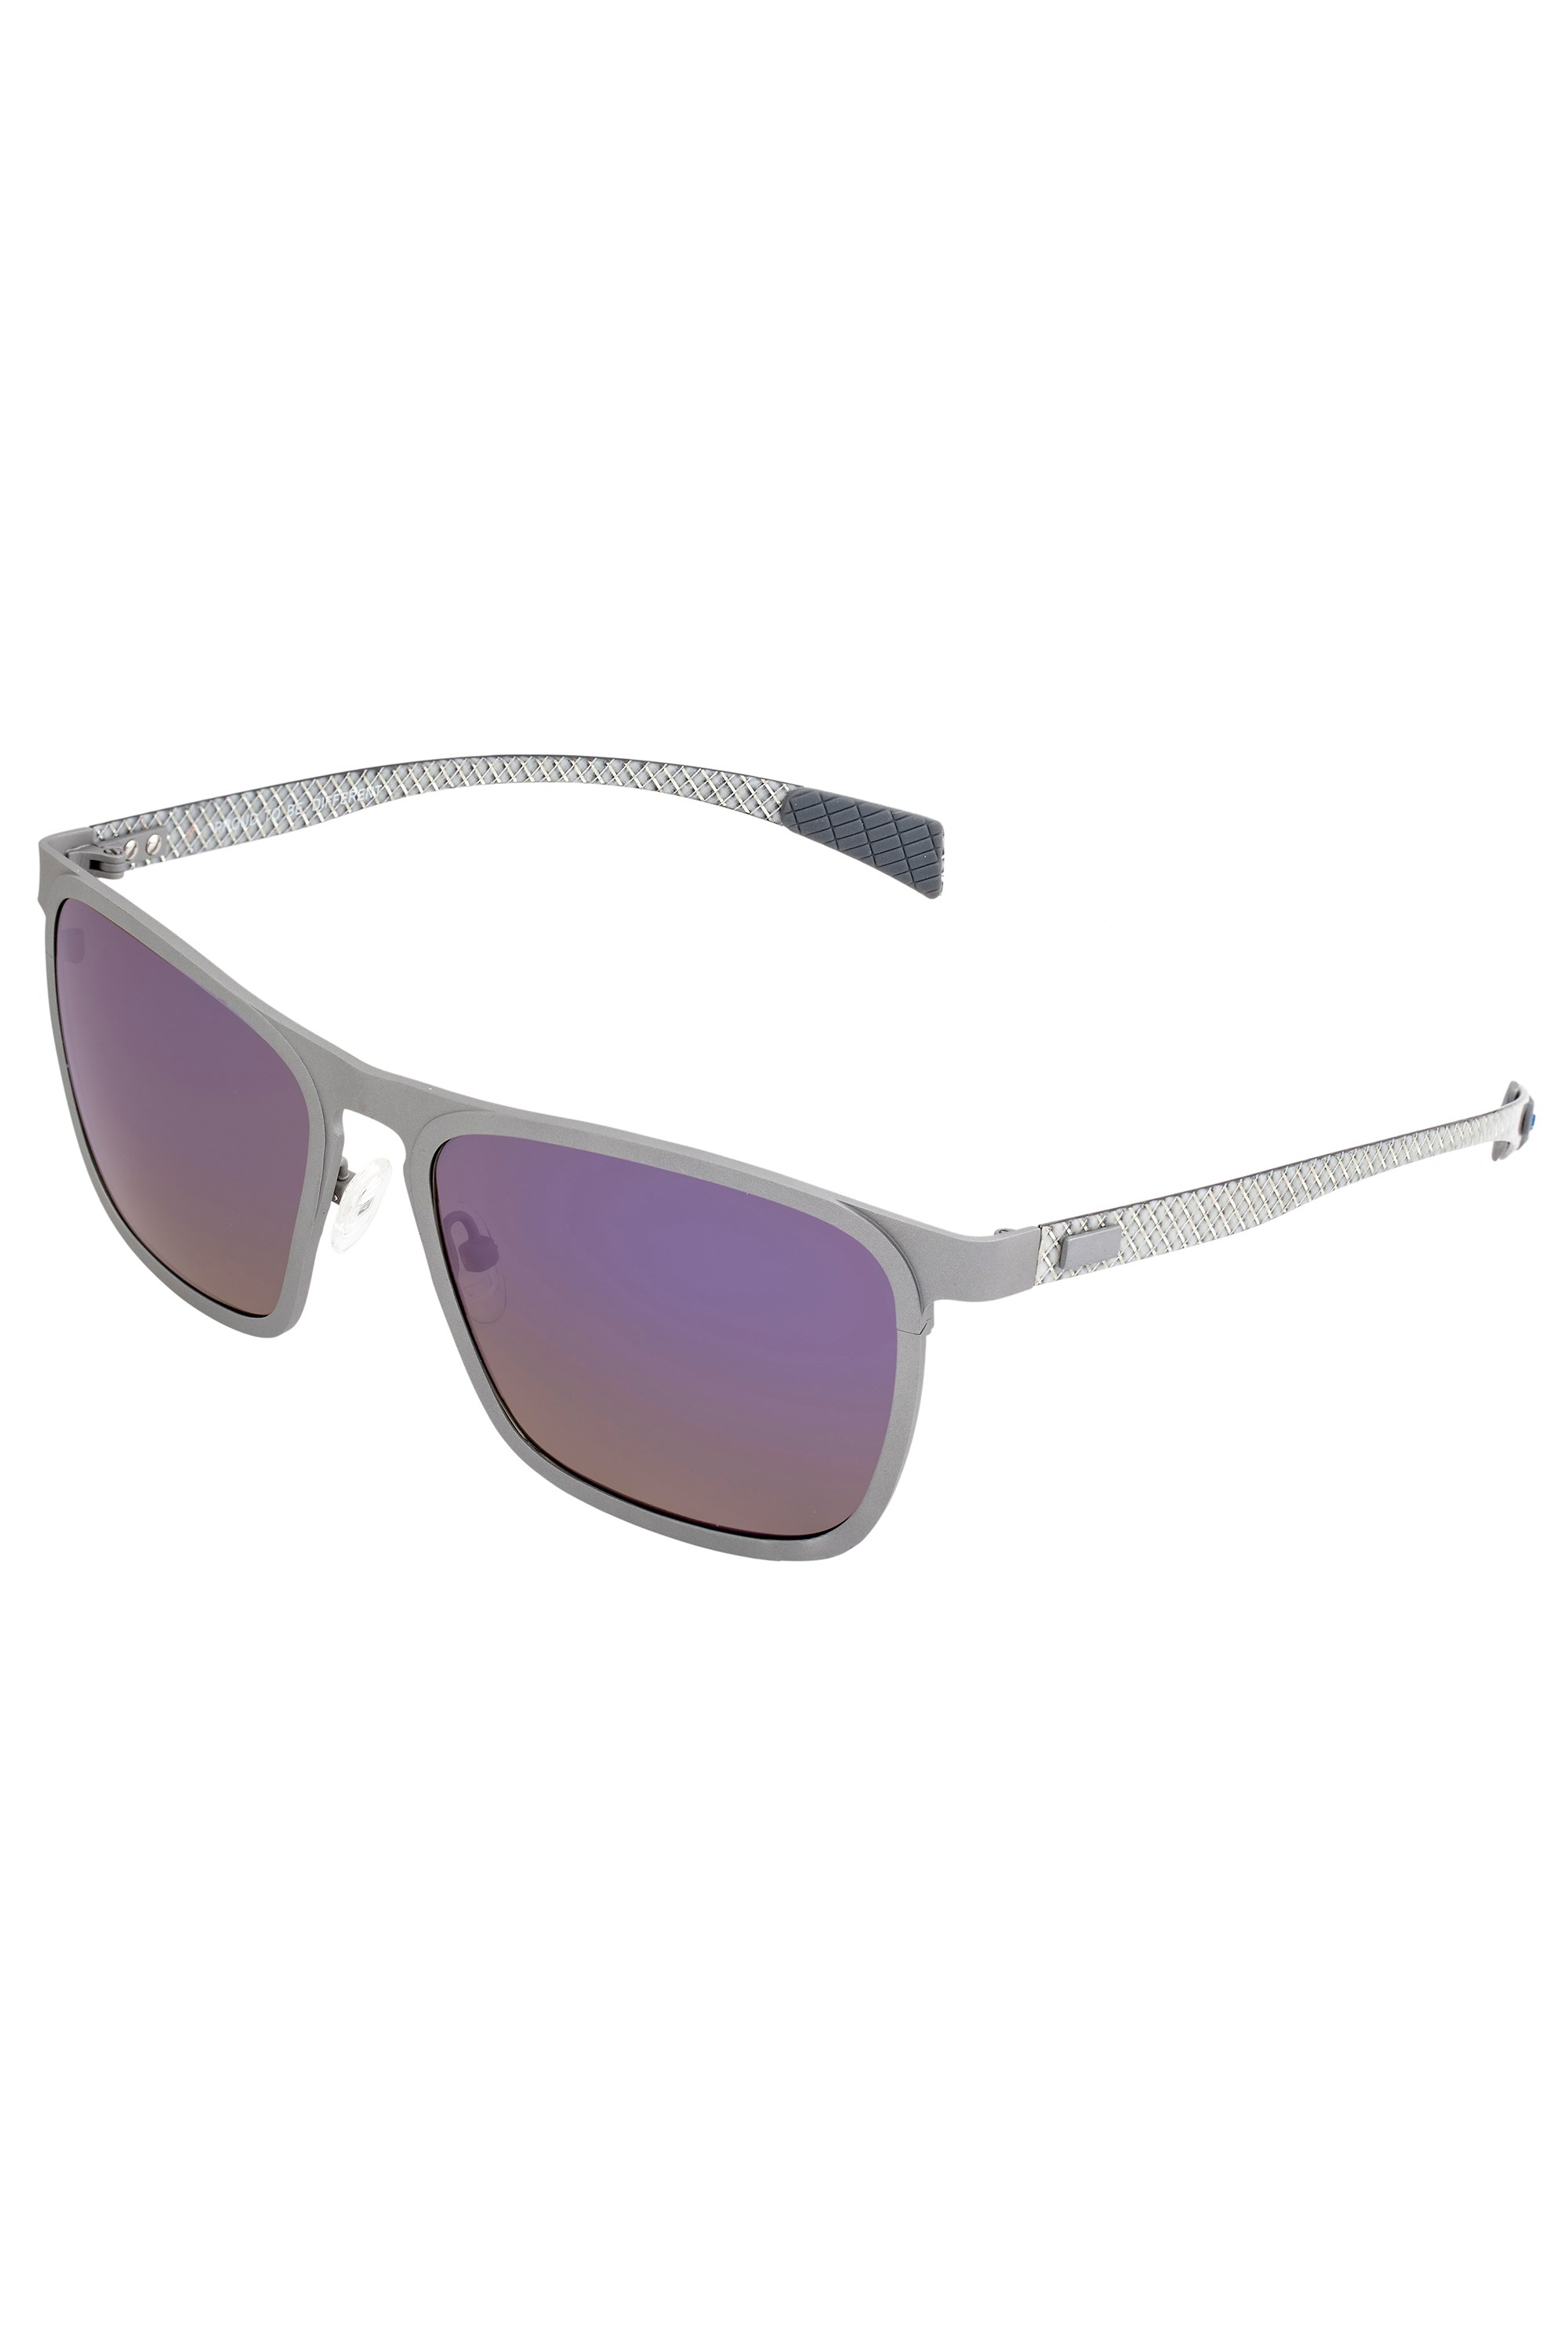 Capricorn Titanium Polarized Sunglasses -